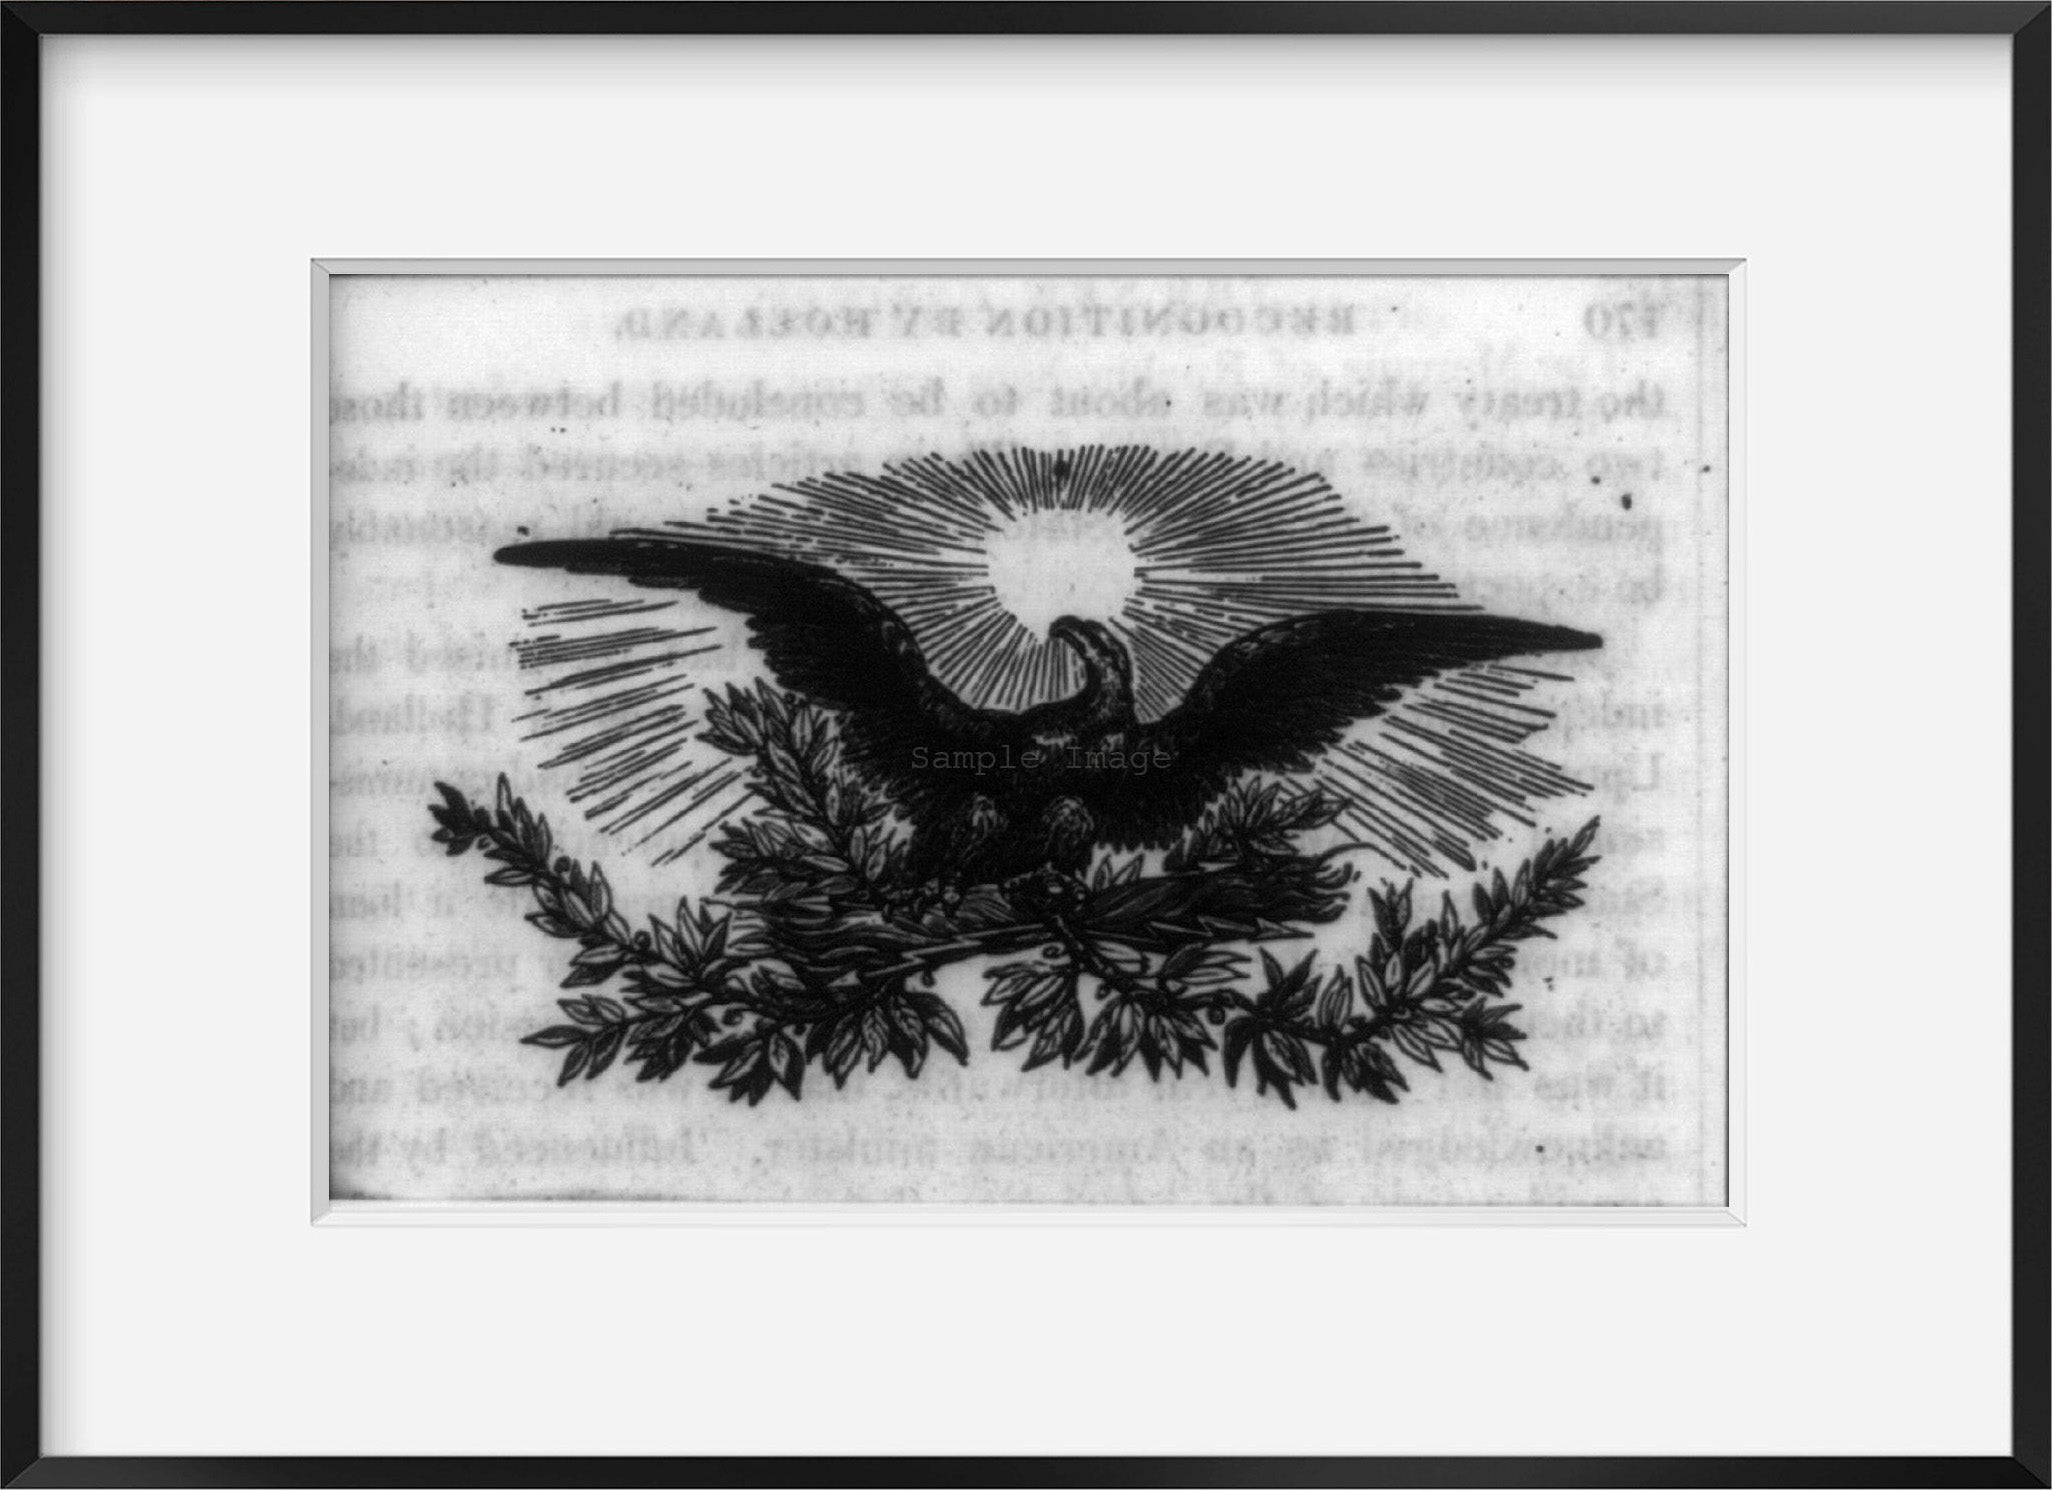 Vintage photograph: American bald eagle